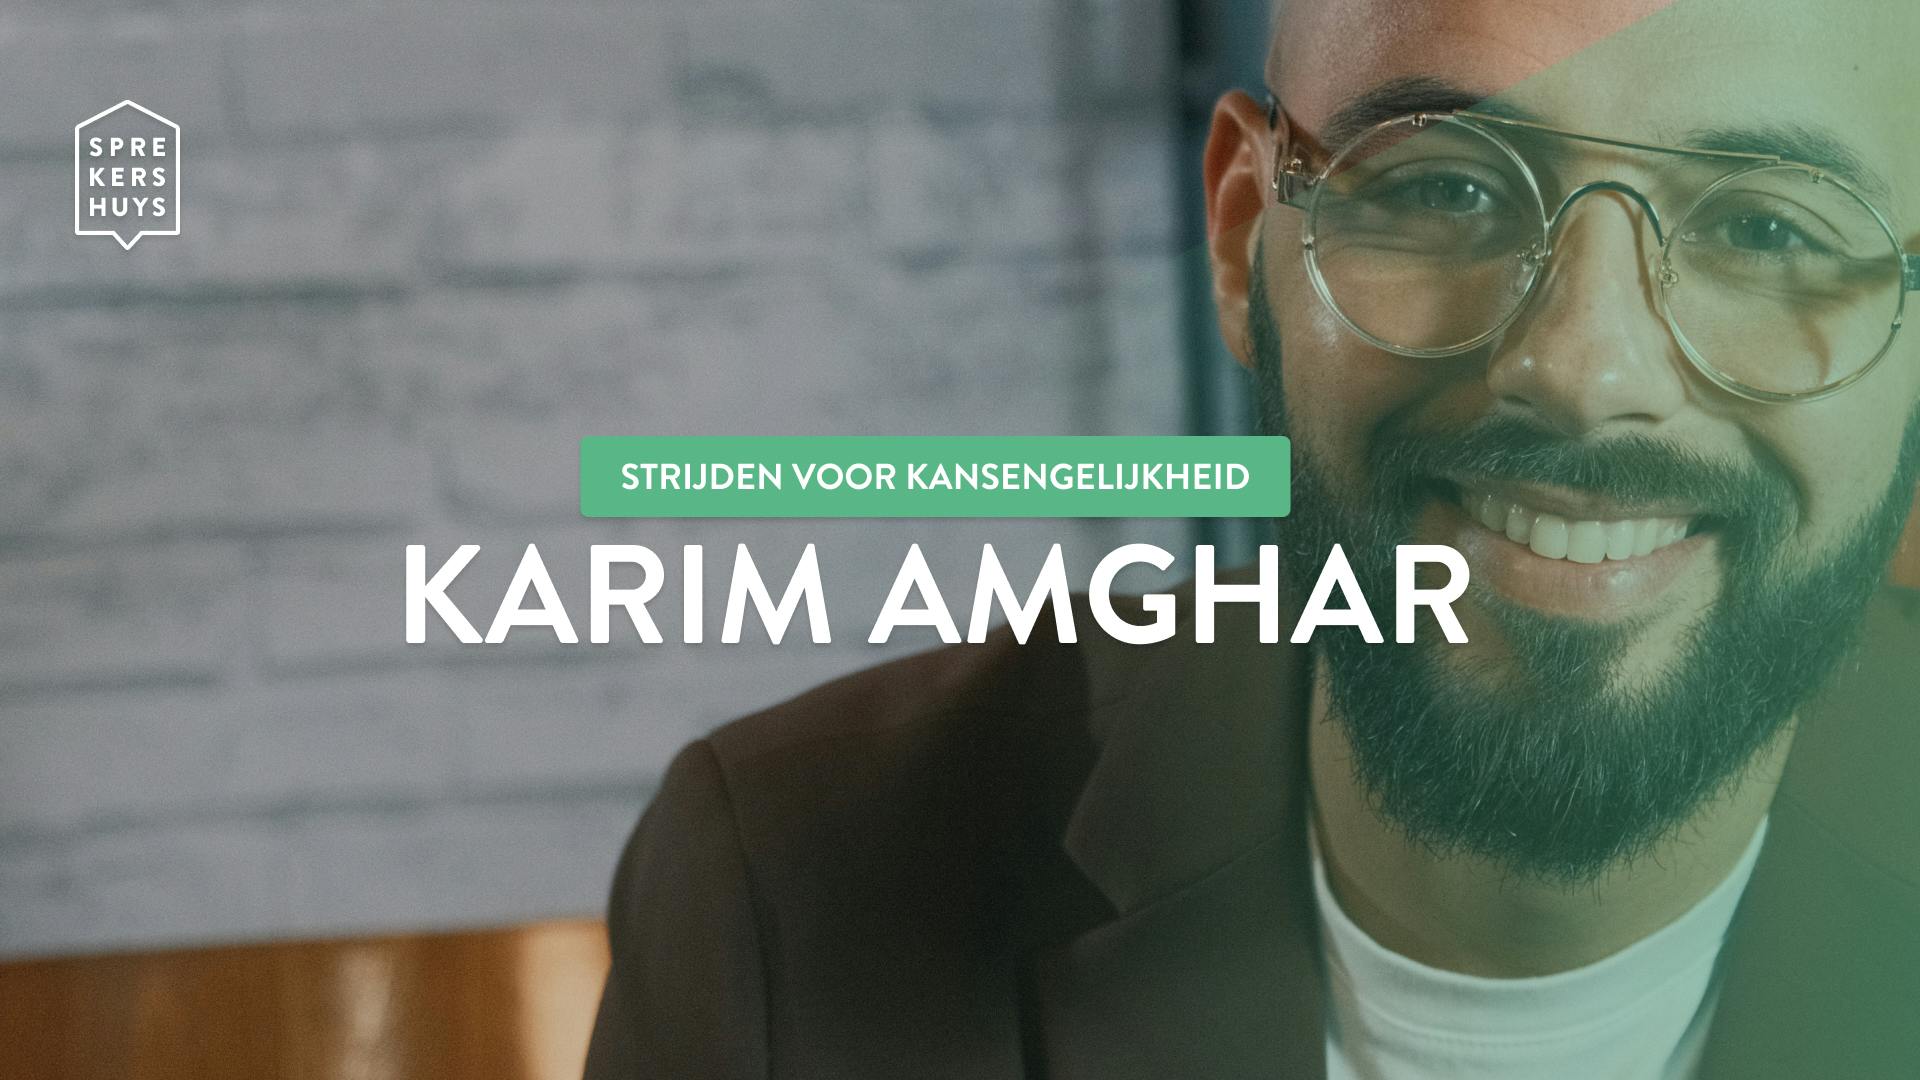 Karim Amghar glimlachend closeup in bruine blazer met tekst 'strijden voor kansgelijkheid karim amghar'